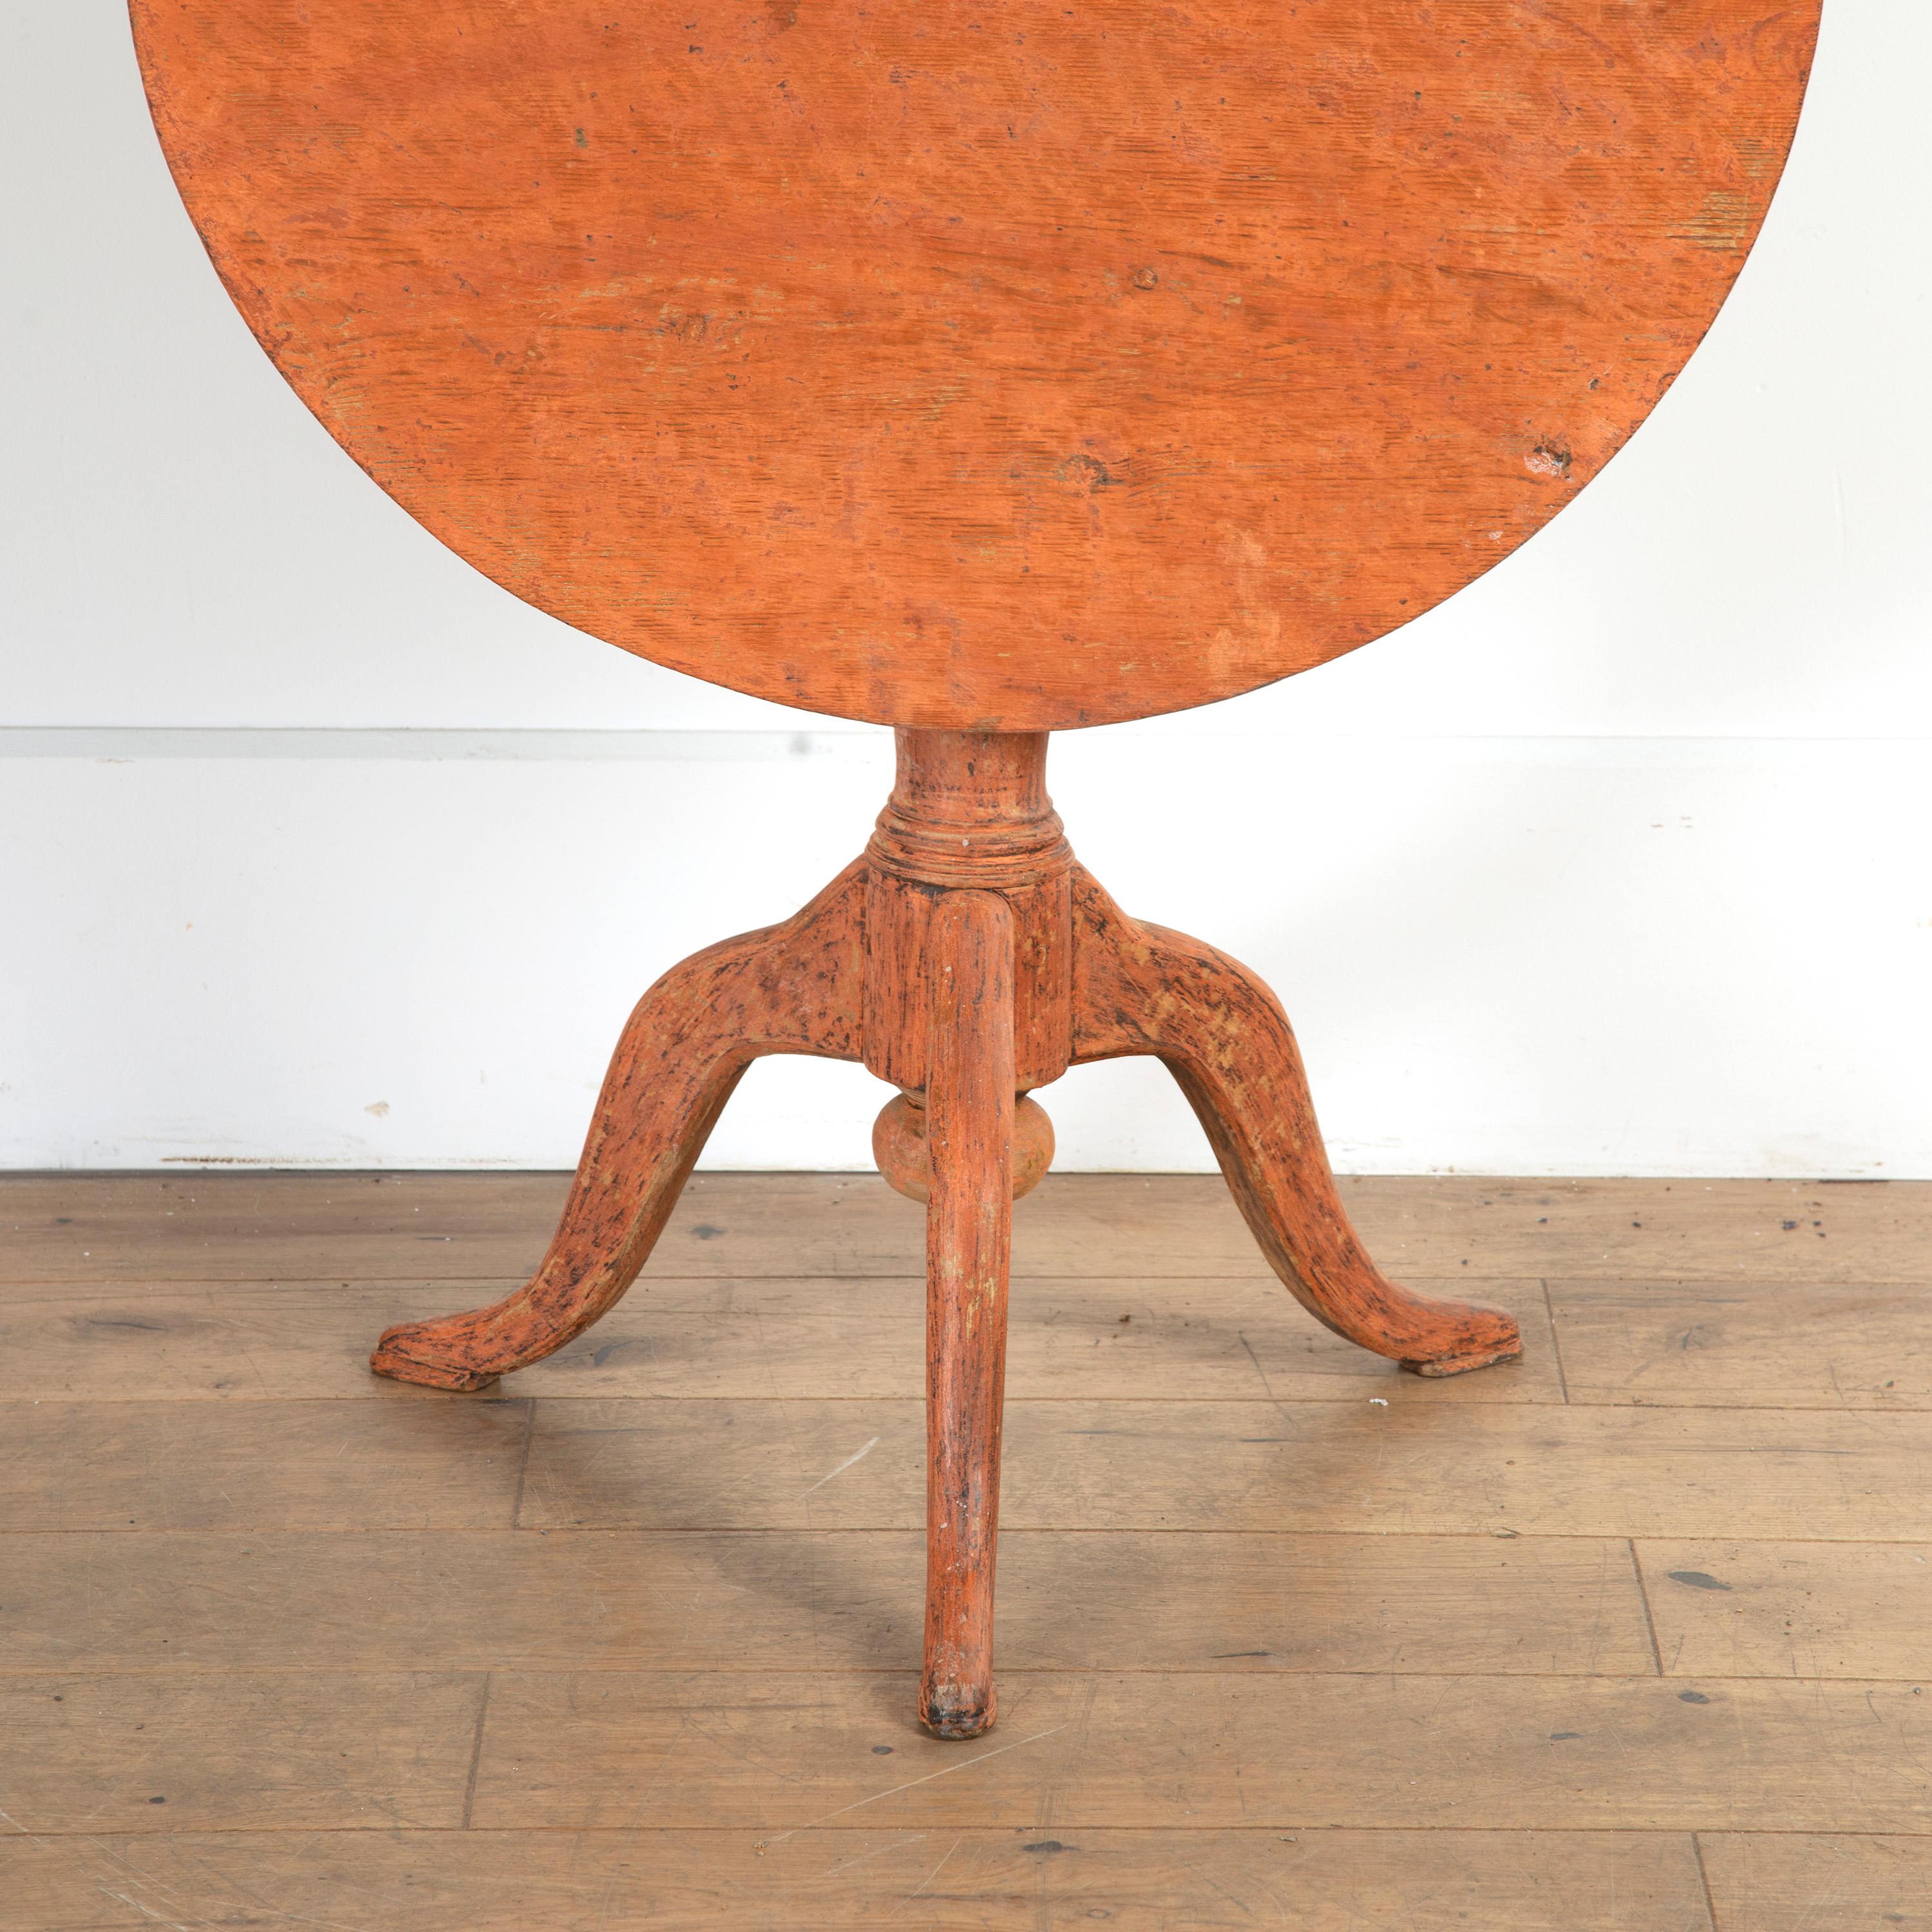 Schöner schwedischer Rokokotisch mit kippbarer Platte.

Dieser schöne Tisch ist in seinem ursprünglichen Zustand und stammt aus dem 18. Das Ganze ruht auf einem rostorangenen Dreibeinsockel mit Cabriole-Beinen und zierlichen Füßen. 

Sein